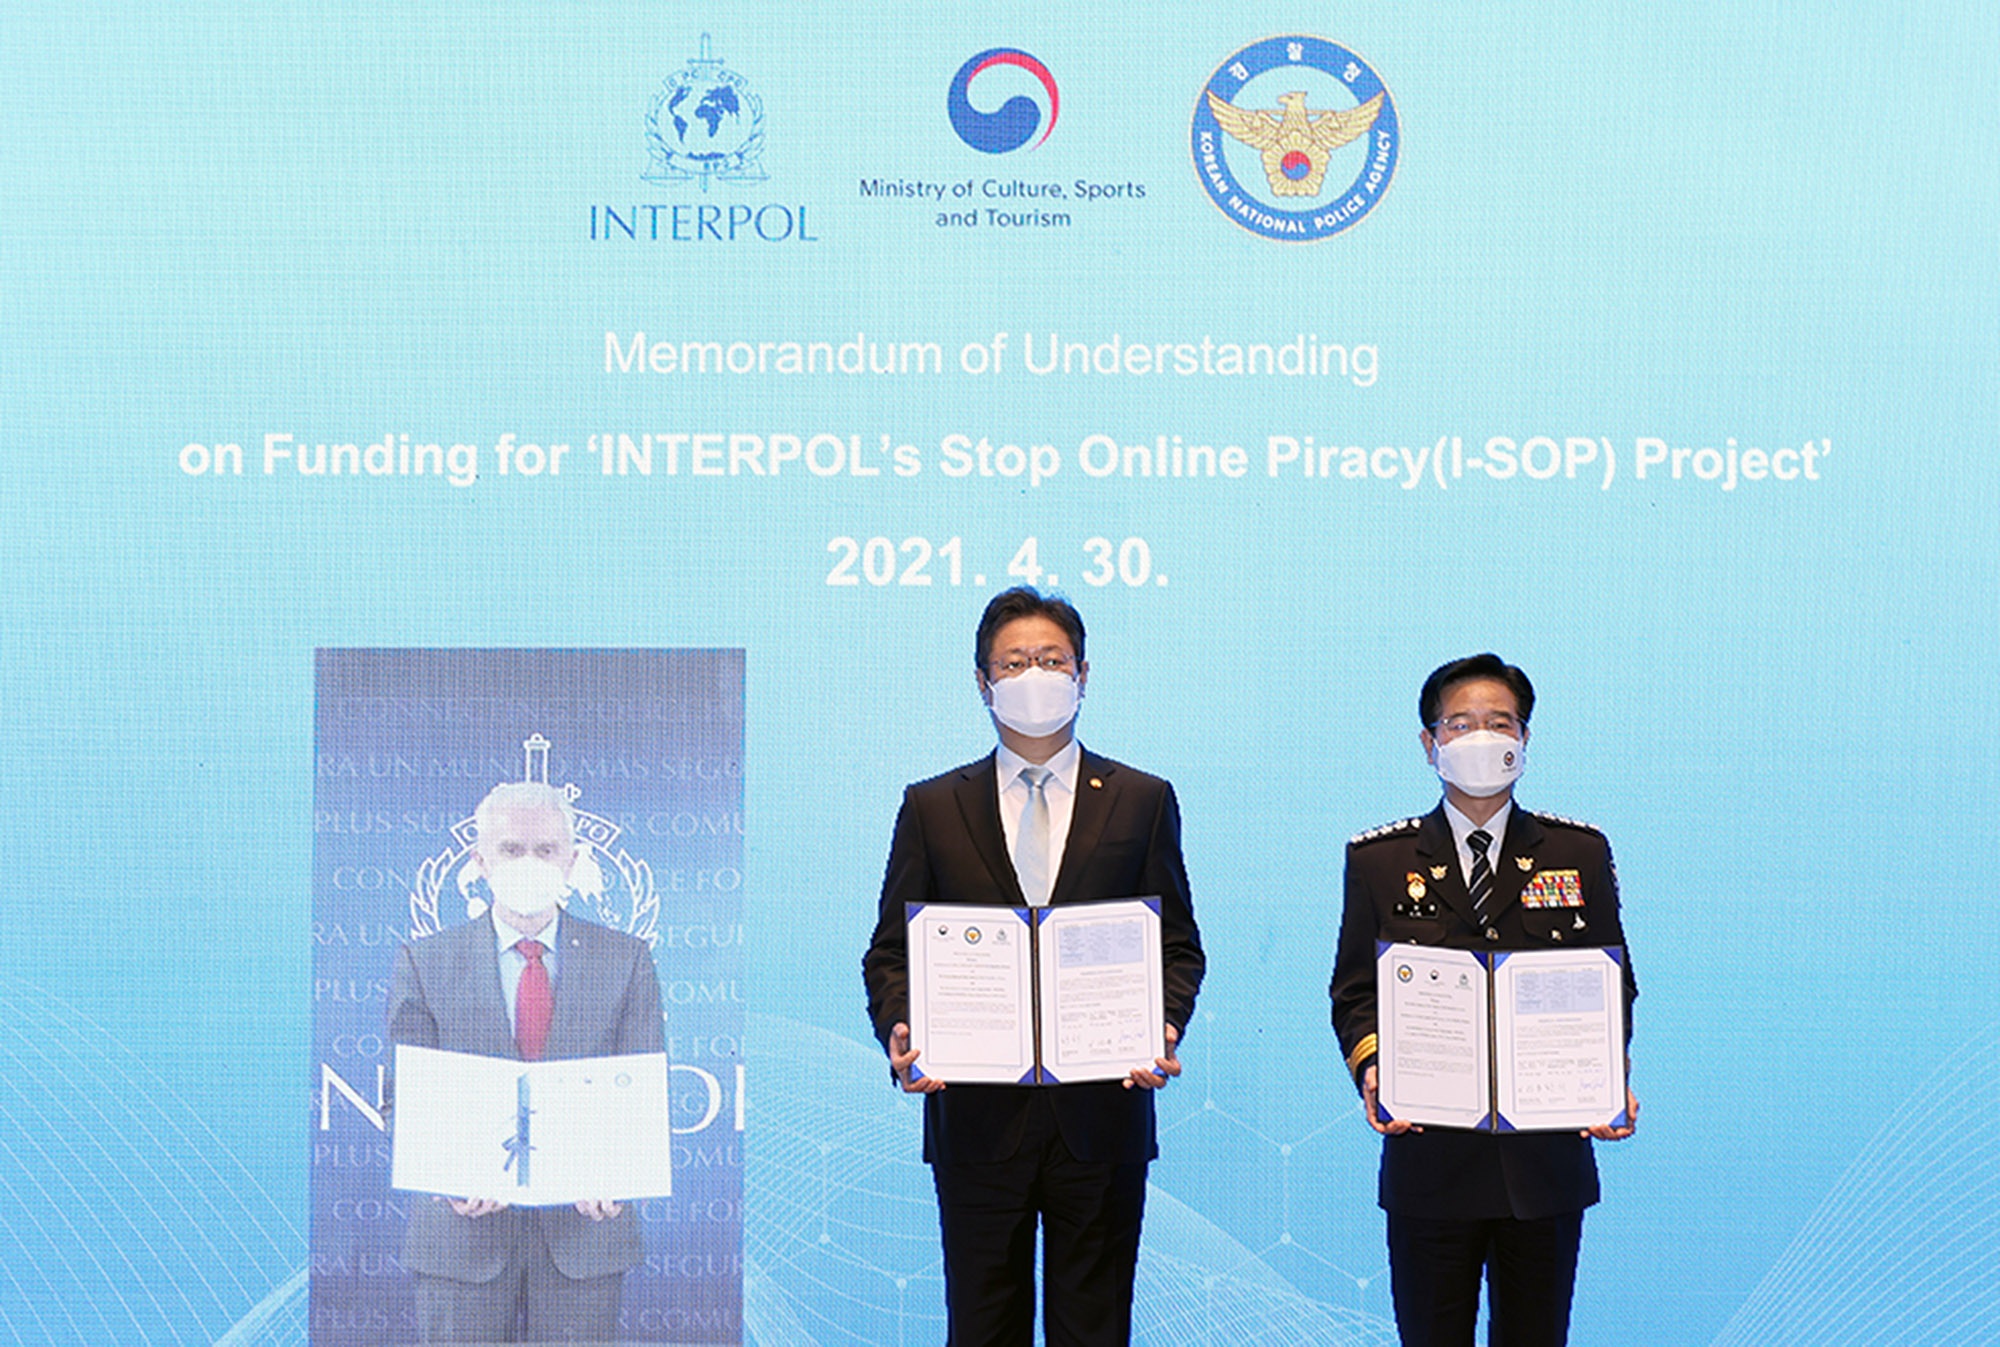 국제적 온라인 저작권 침해에 인터폴과 공동으로 대응한다(2021.04.30.)